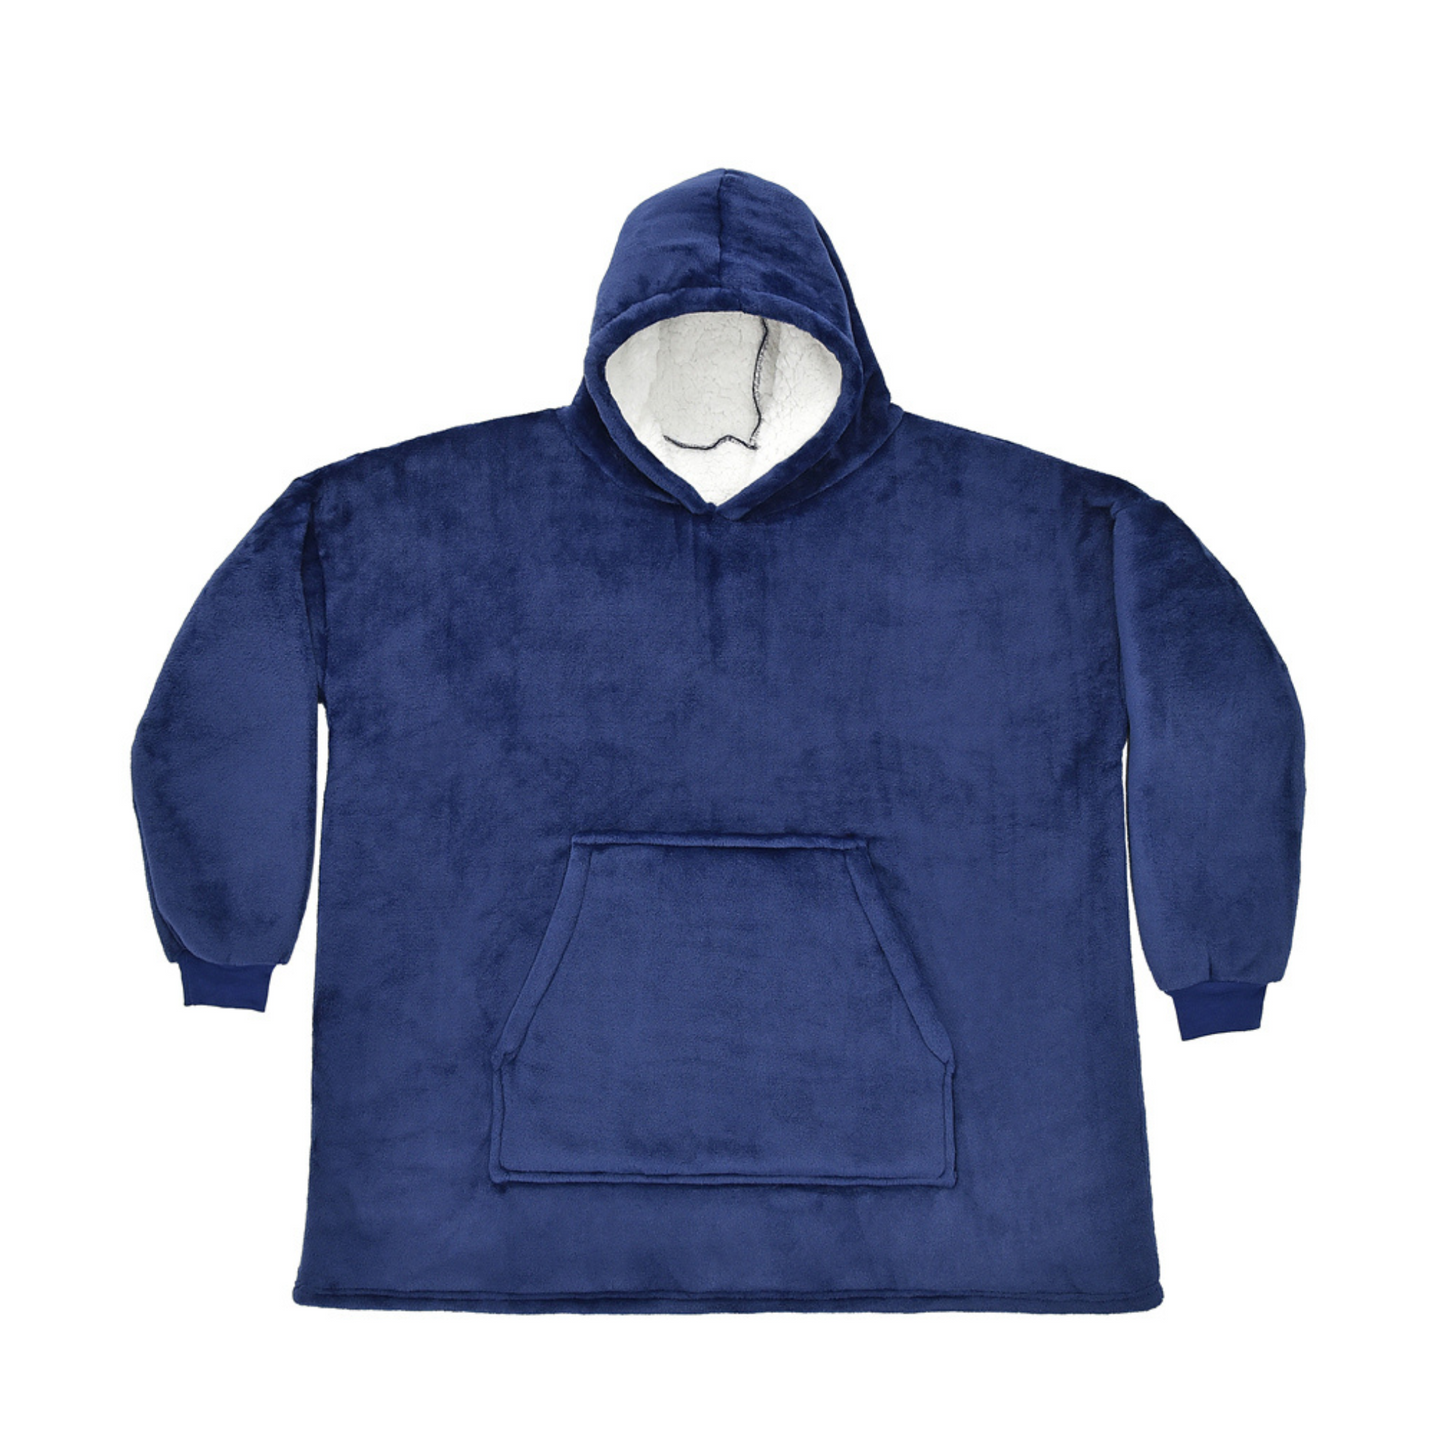 Personalised Wearable Blanket - Oodie Alternative - Blue